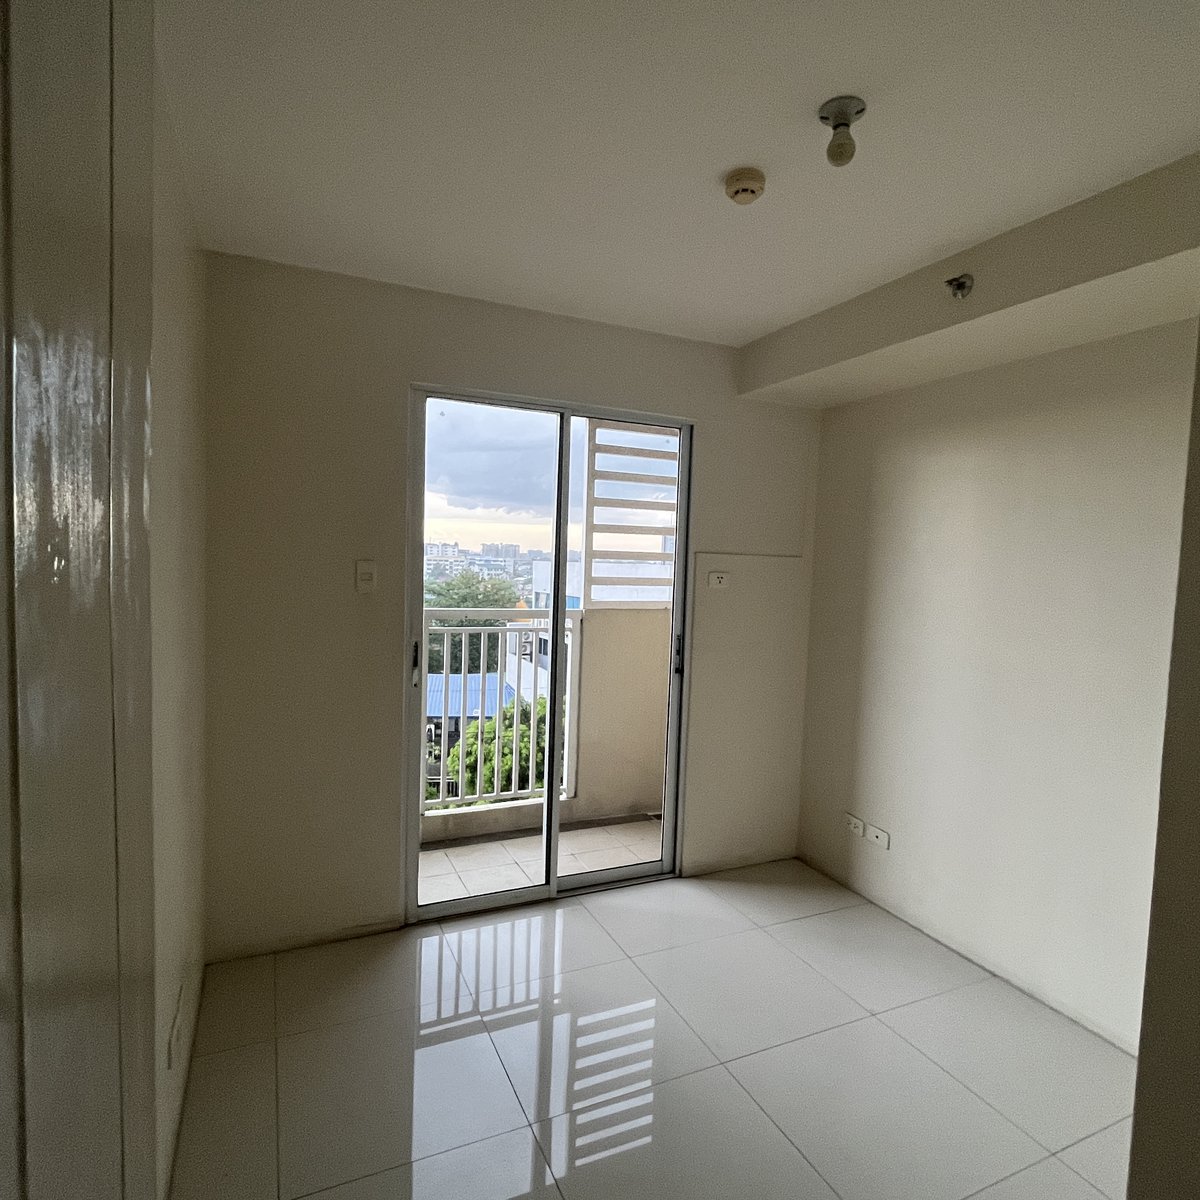 48.18 sqm 2-bedroom Condo For Sale in Pasig Metro Manila